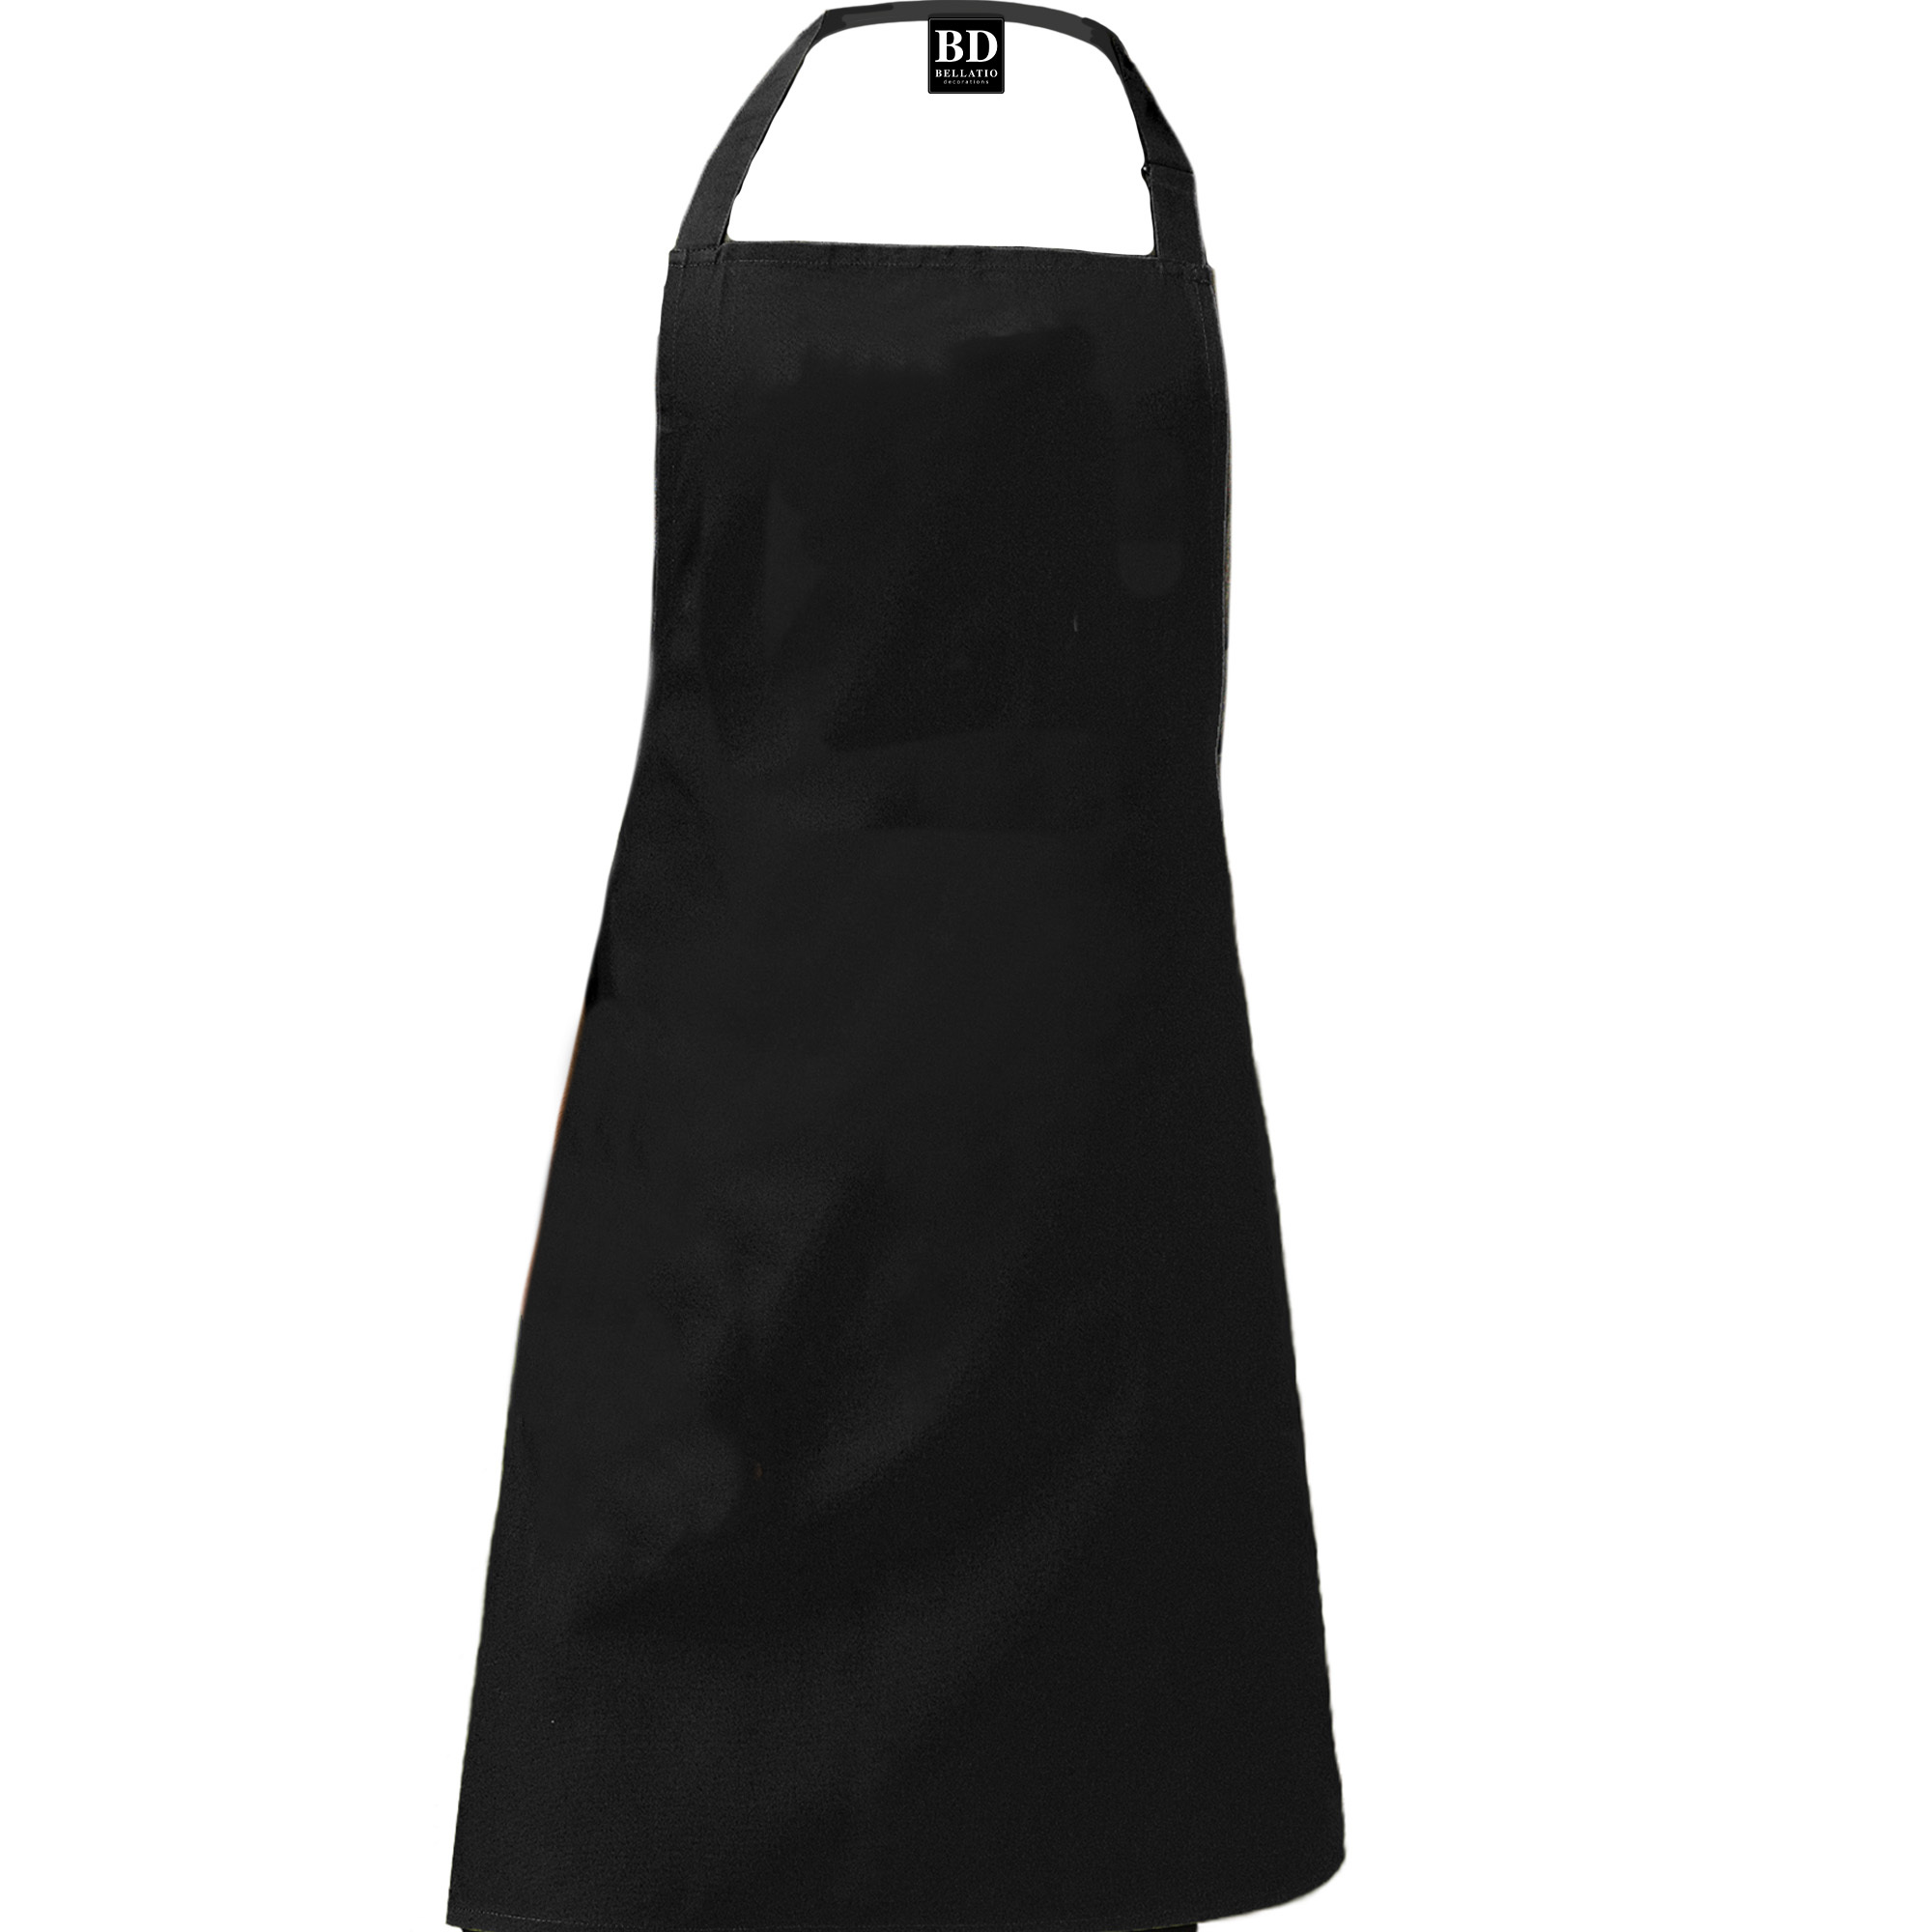 Queen of the kitchen Roxy keukenschort/ barbecue schort zwart voor dames